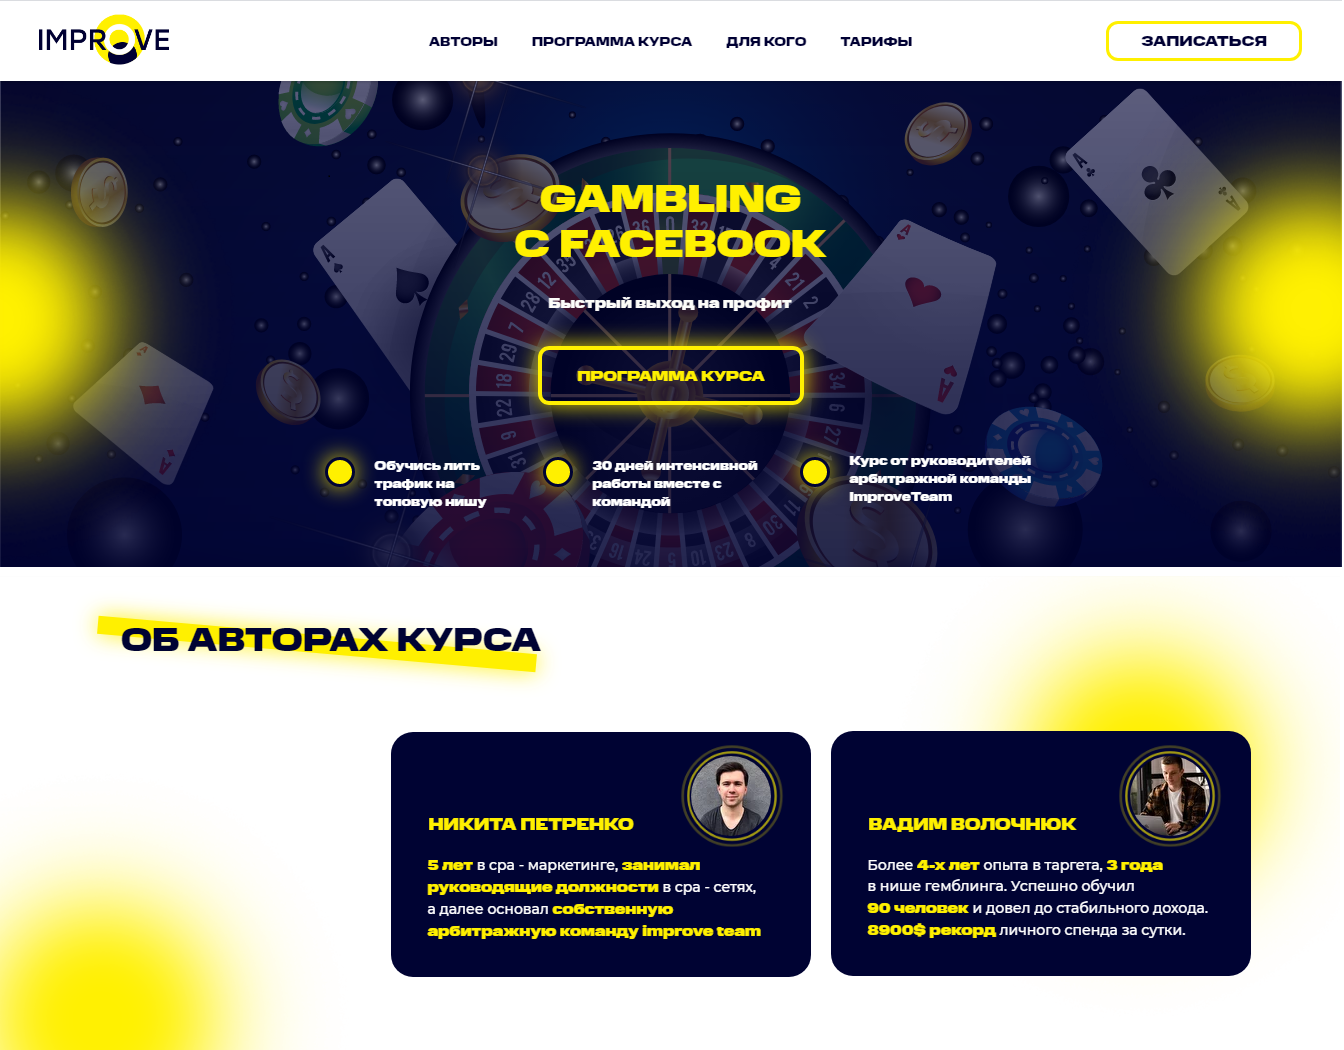 vadim-volochnjuk-nikita-petrenko-gambling-s-facebook-2021-improveteam-png.691